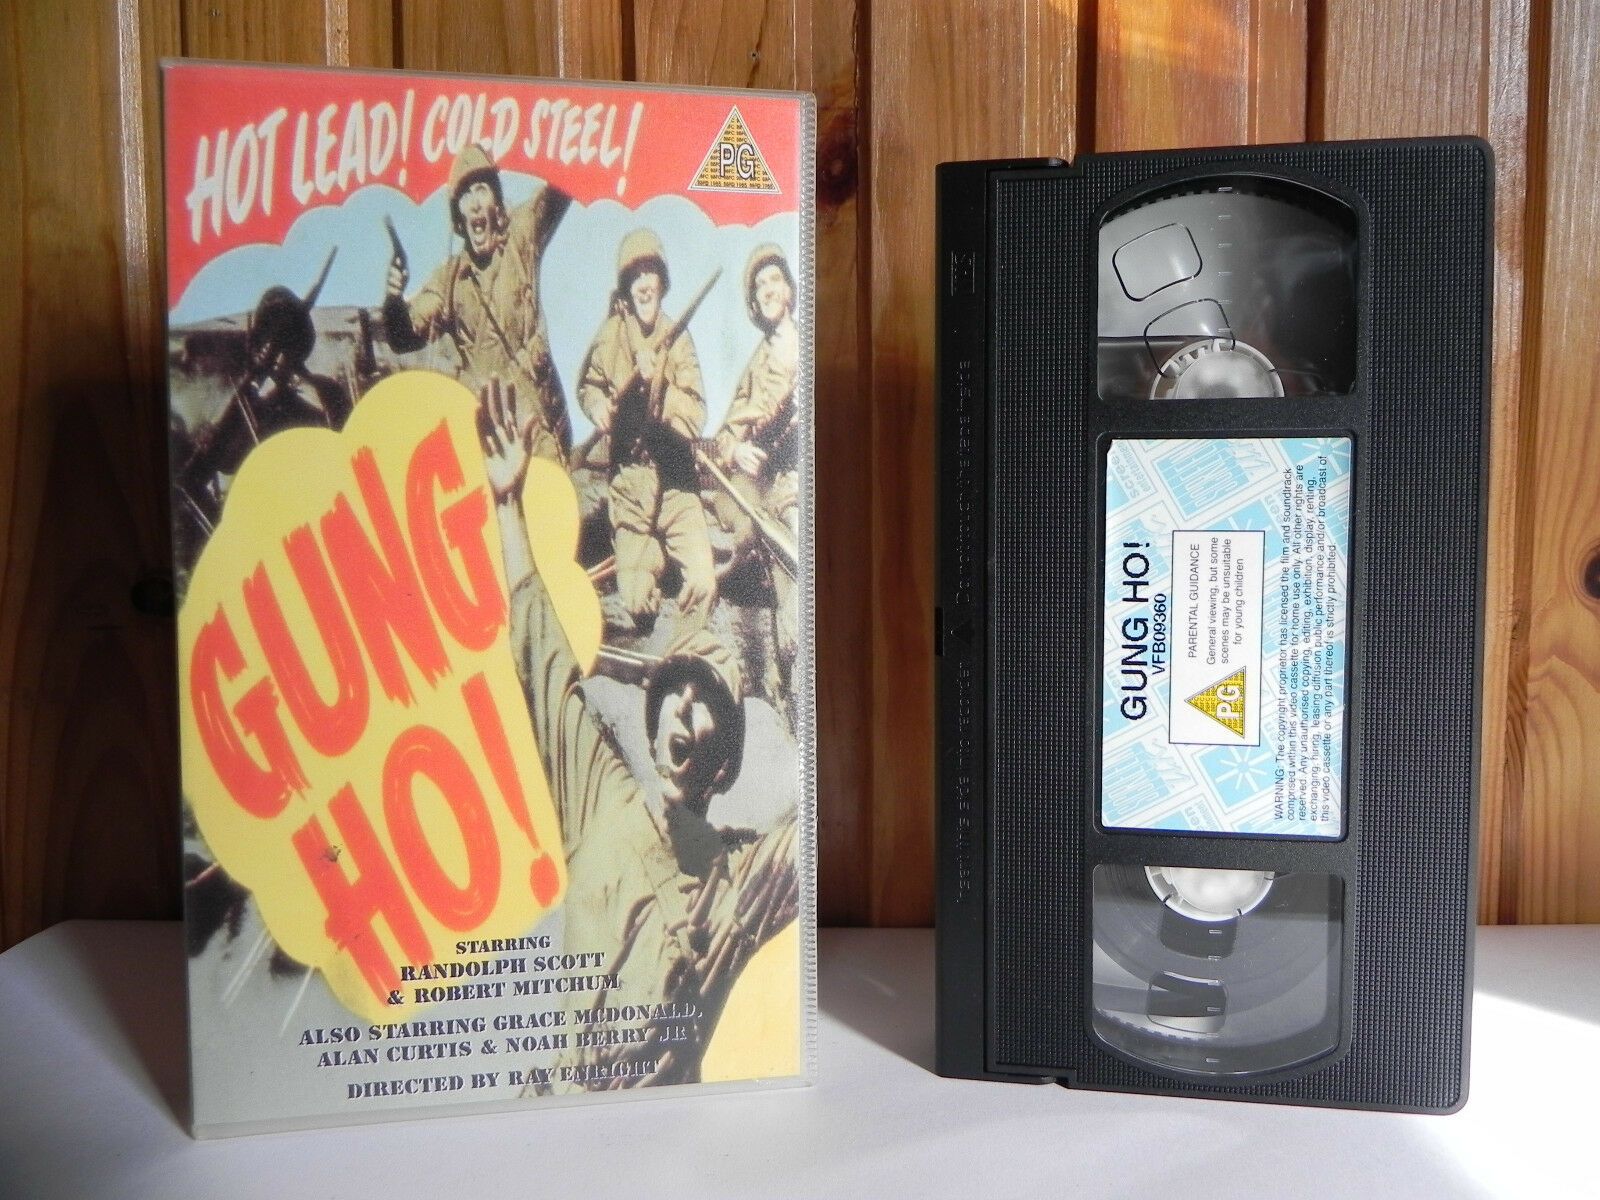 Gung Ho! - Screen - War Drama - Randolph Scott - Robert Mitchum - Pal VHS-